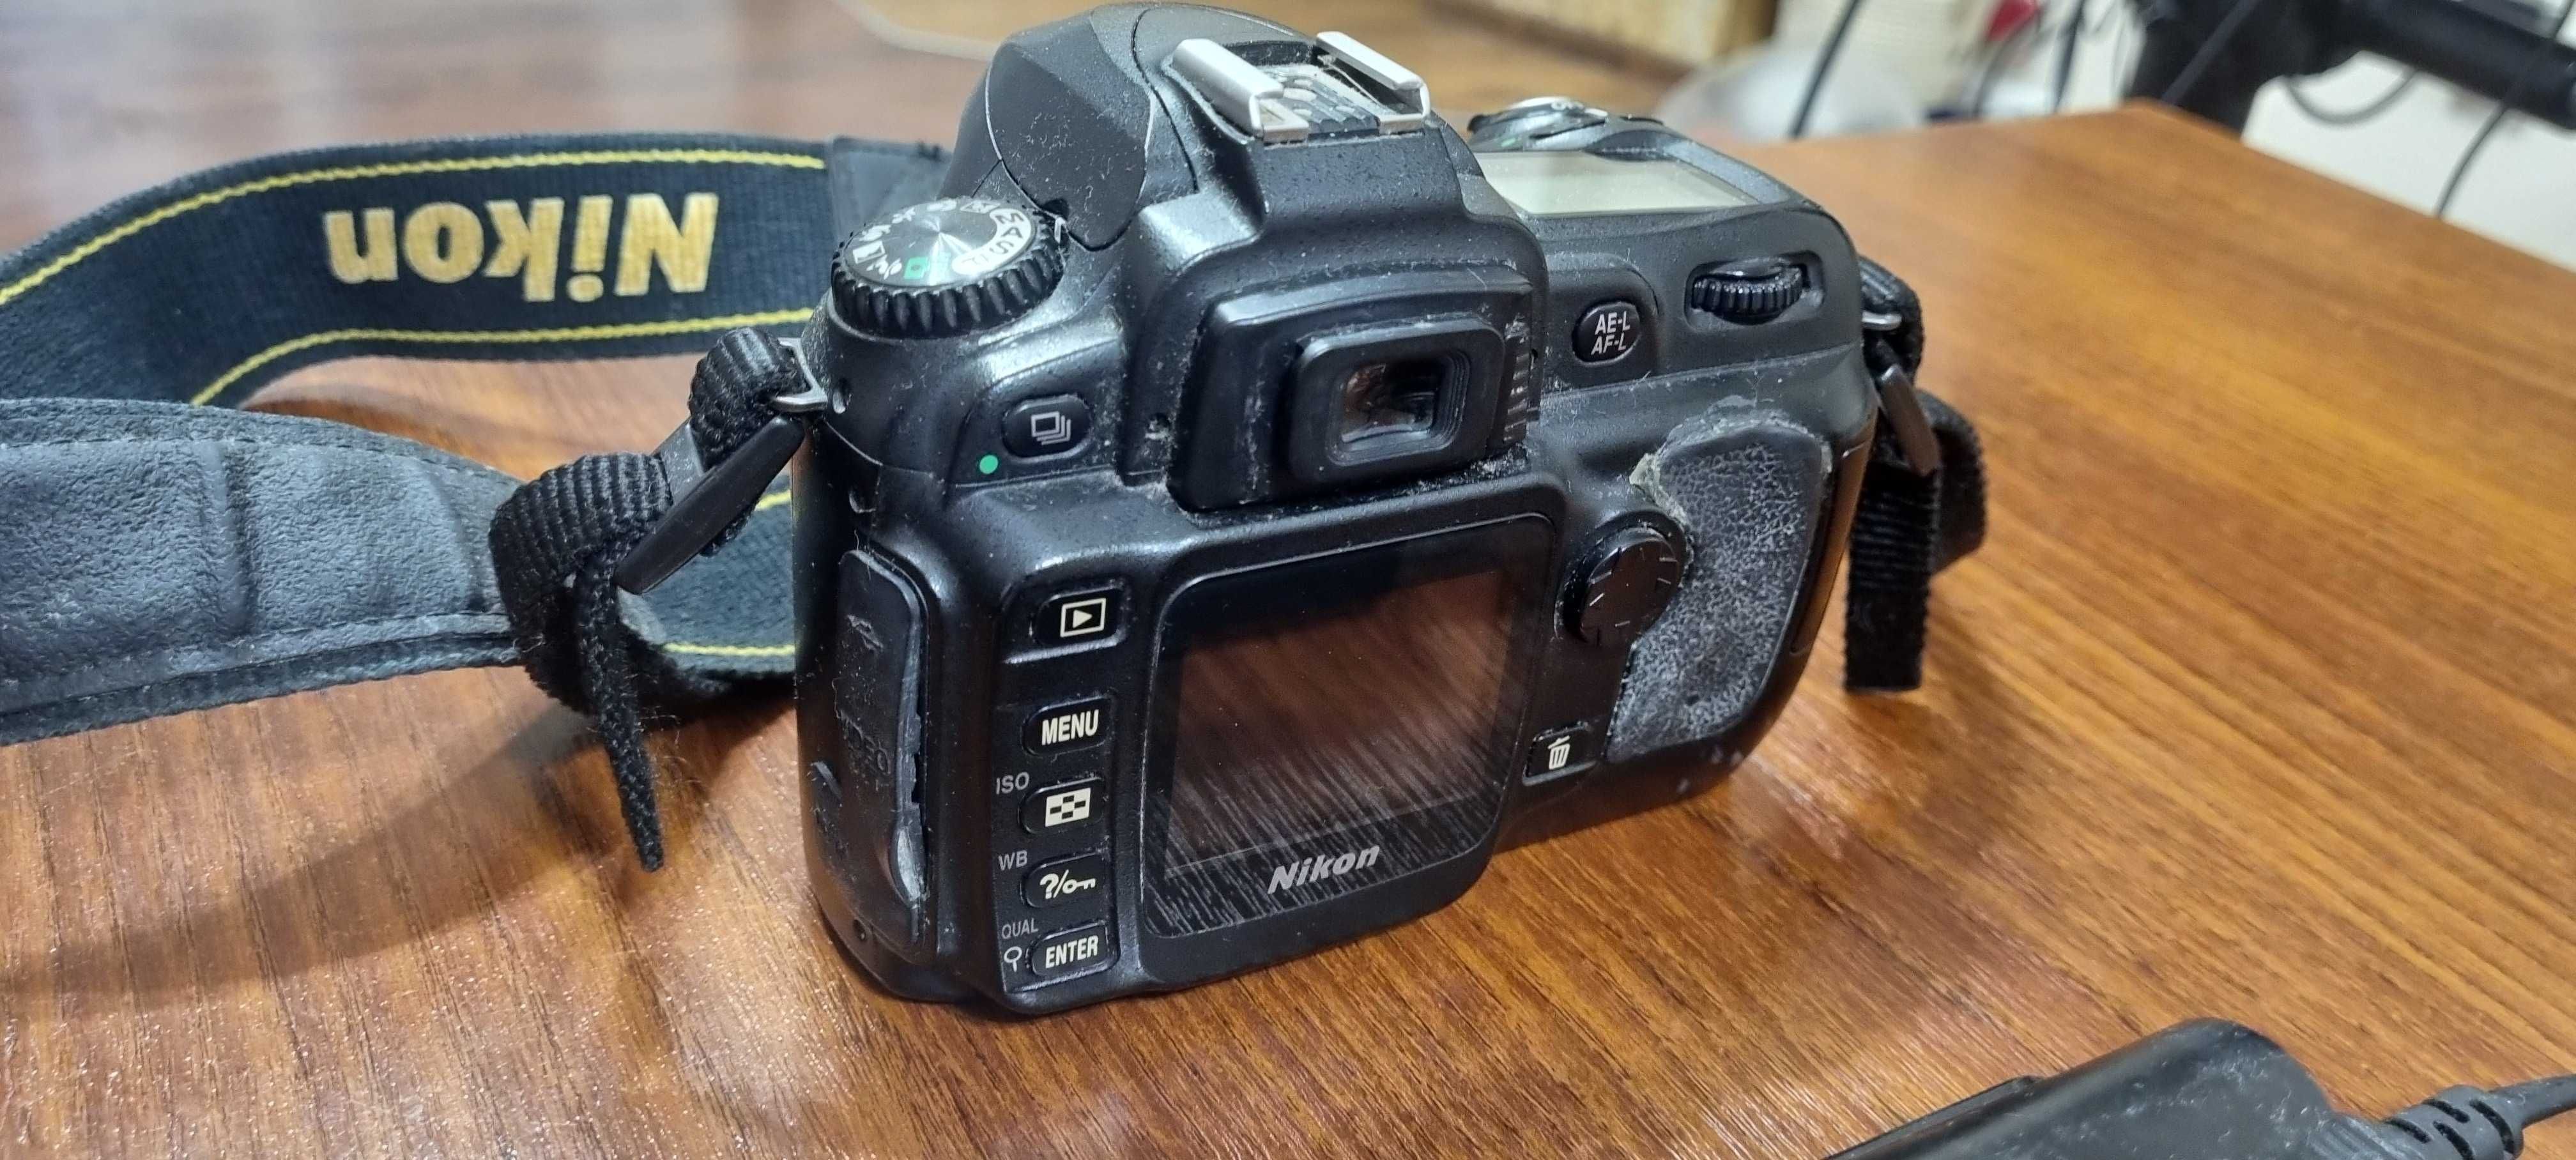 Nikon D50 Uszkodzony       Wszytsko to co widać na zdjęciach